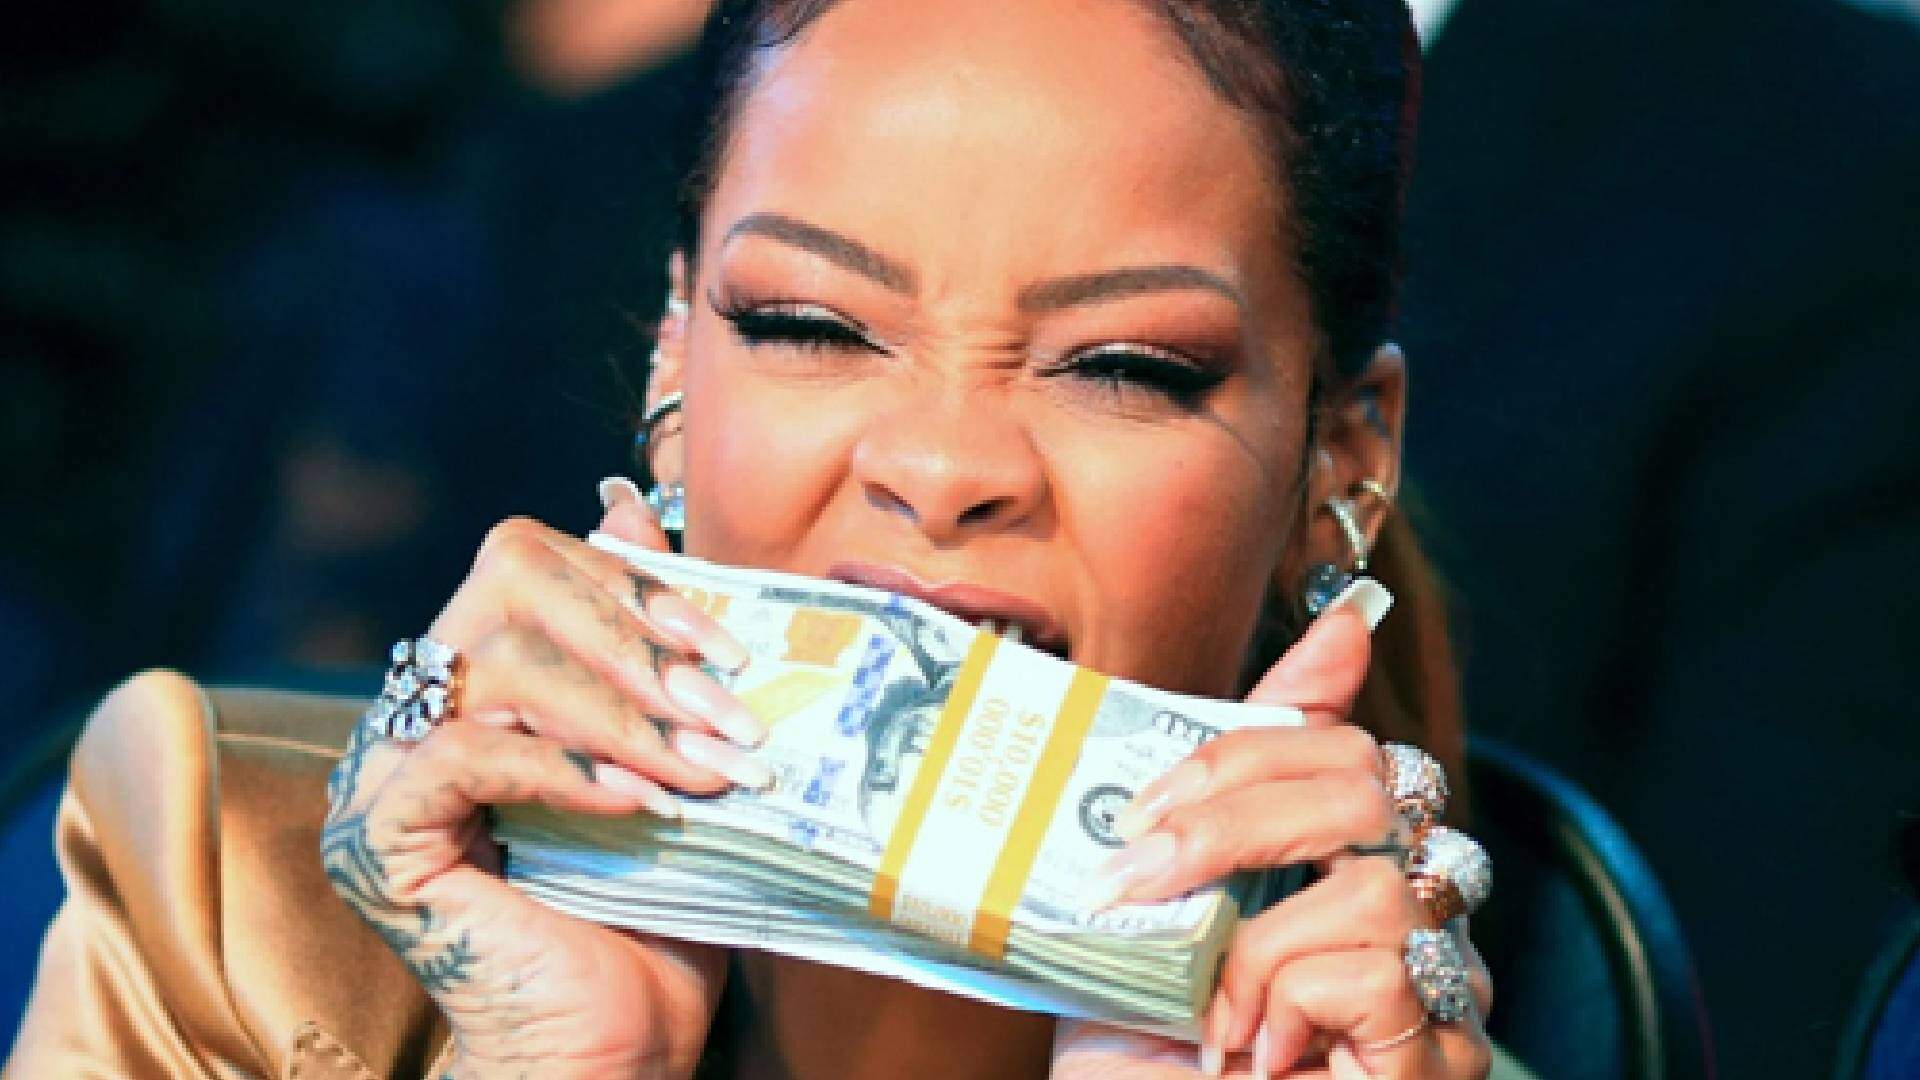 Forbes revela valor da fortuna de Rihanna e choca fãs da cantora: “Rica!”